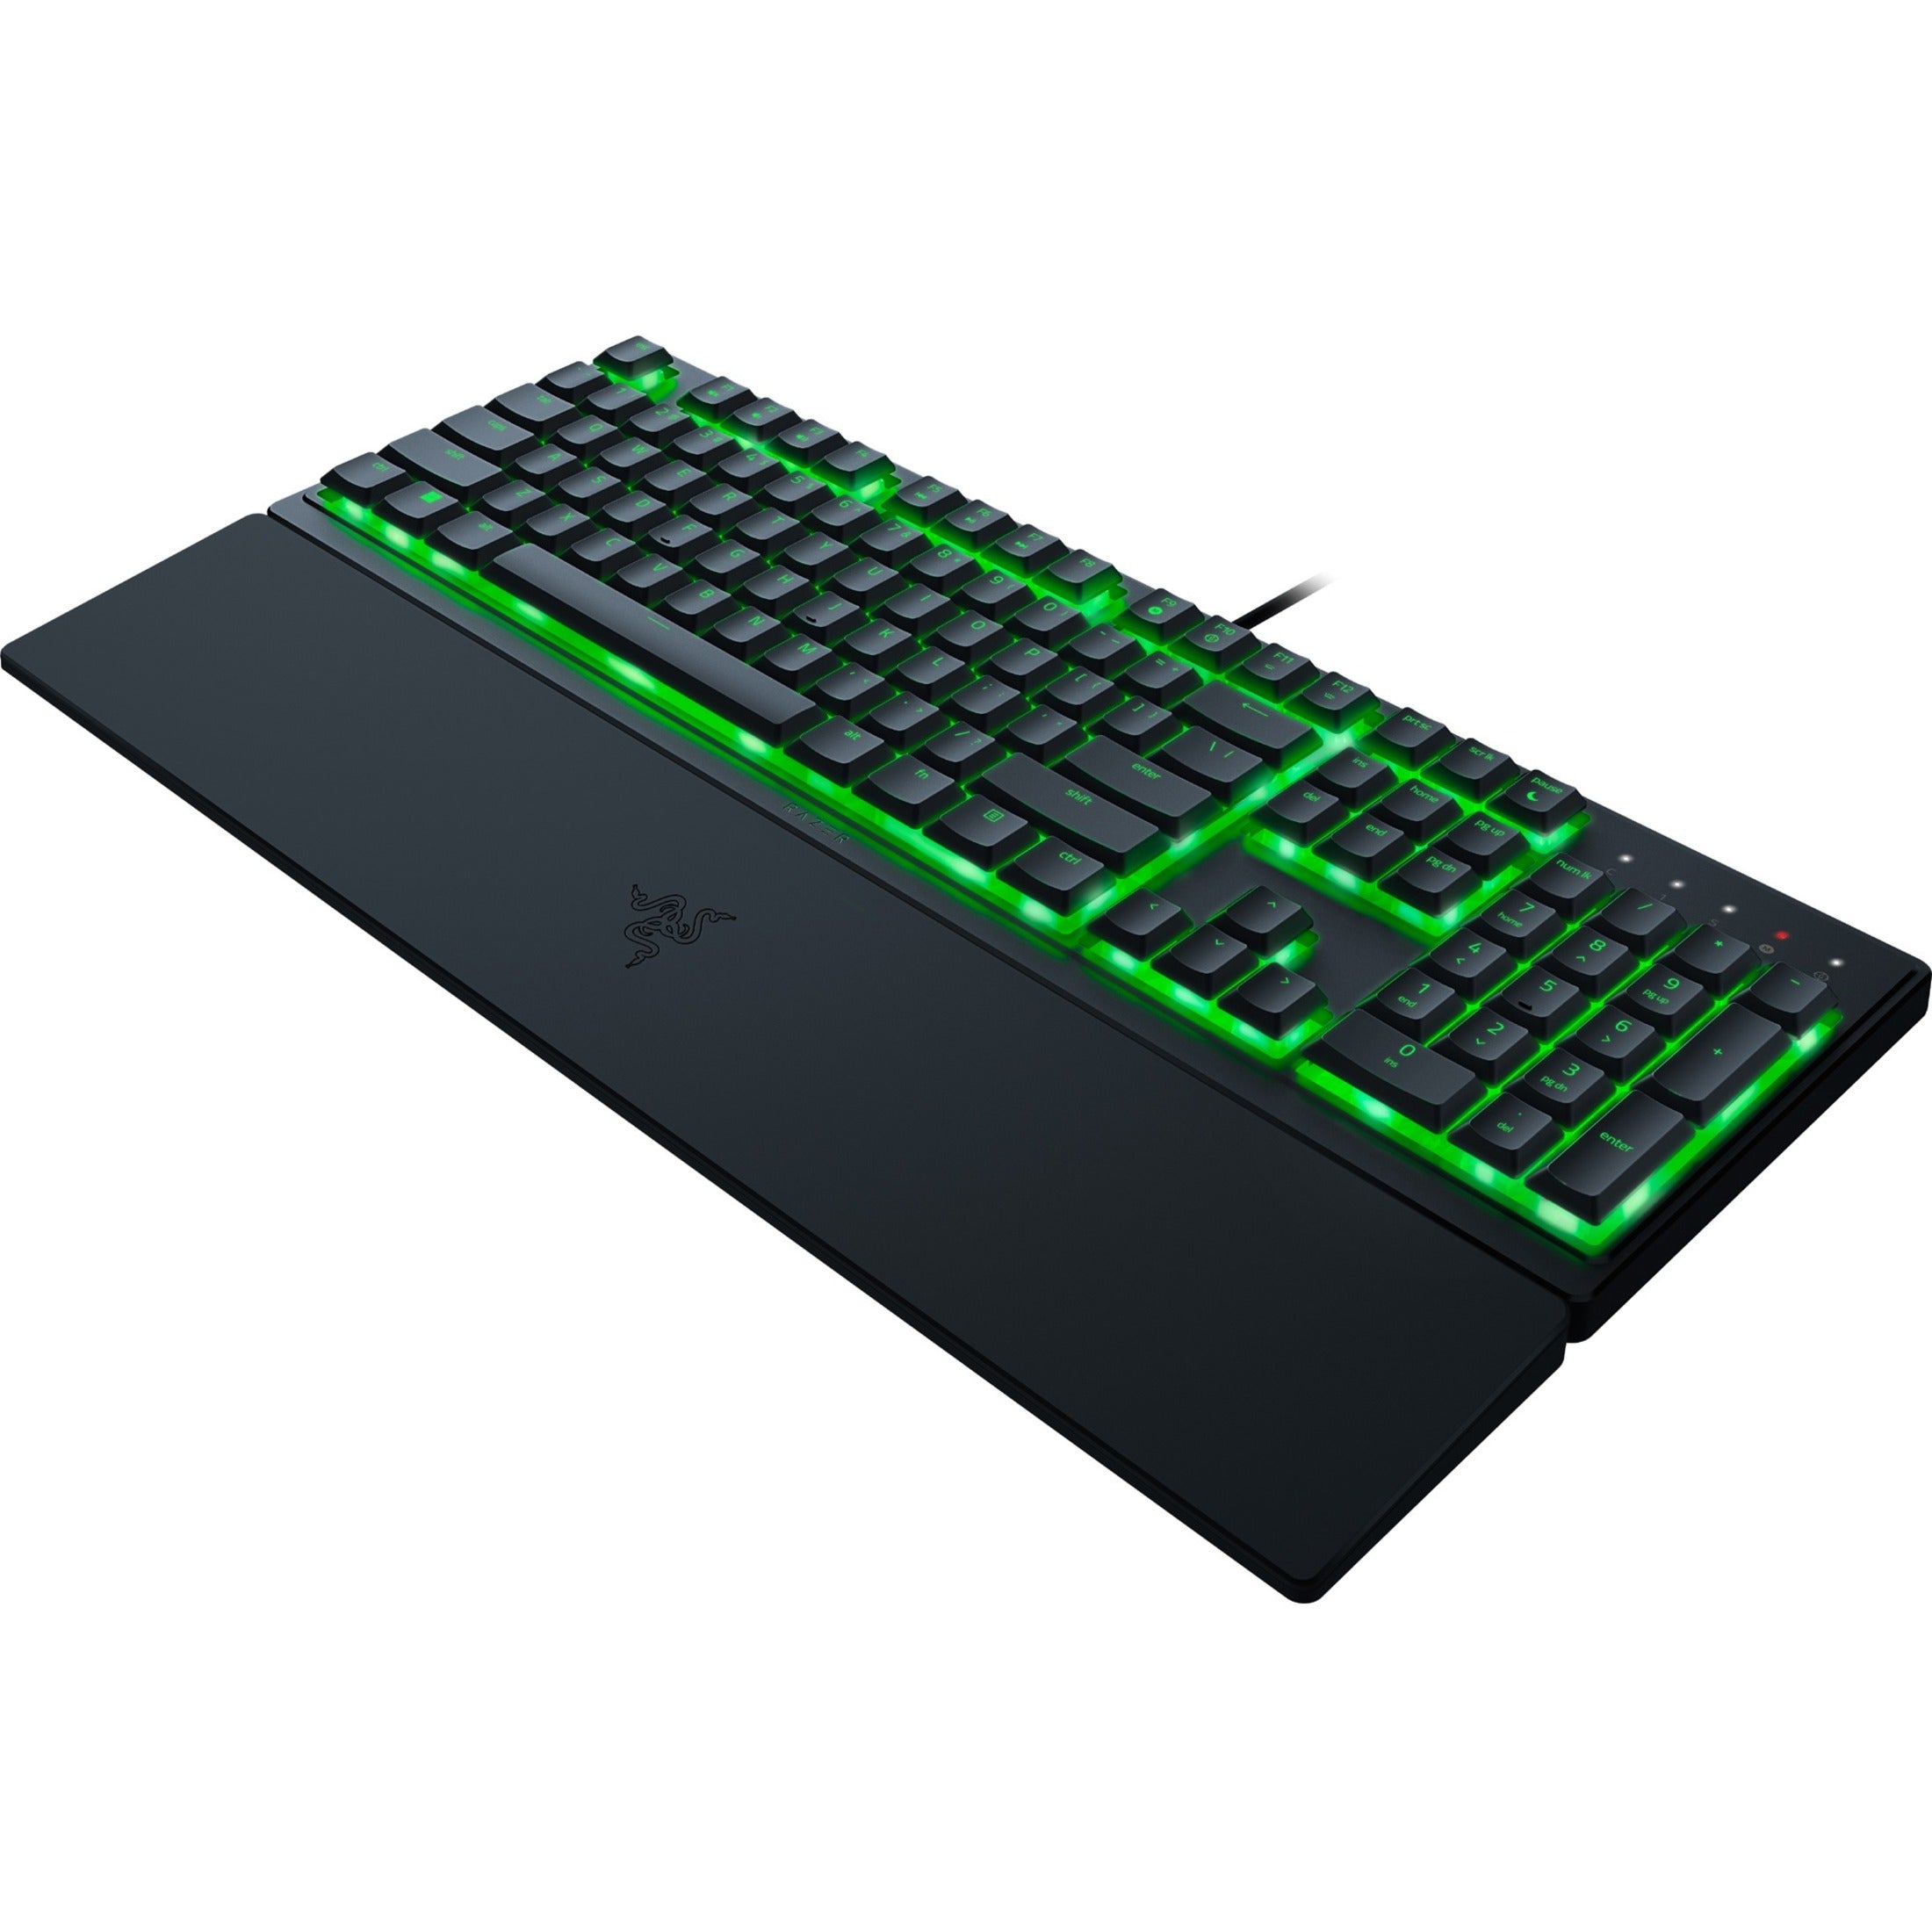 Razer RZ03-04470200-R3U1 Ornata V3 X Low-profile Gaming Keyboard, RGB Backlight, 2 Year Warranty